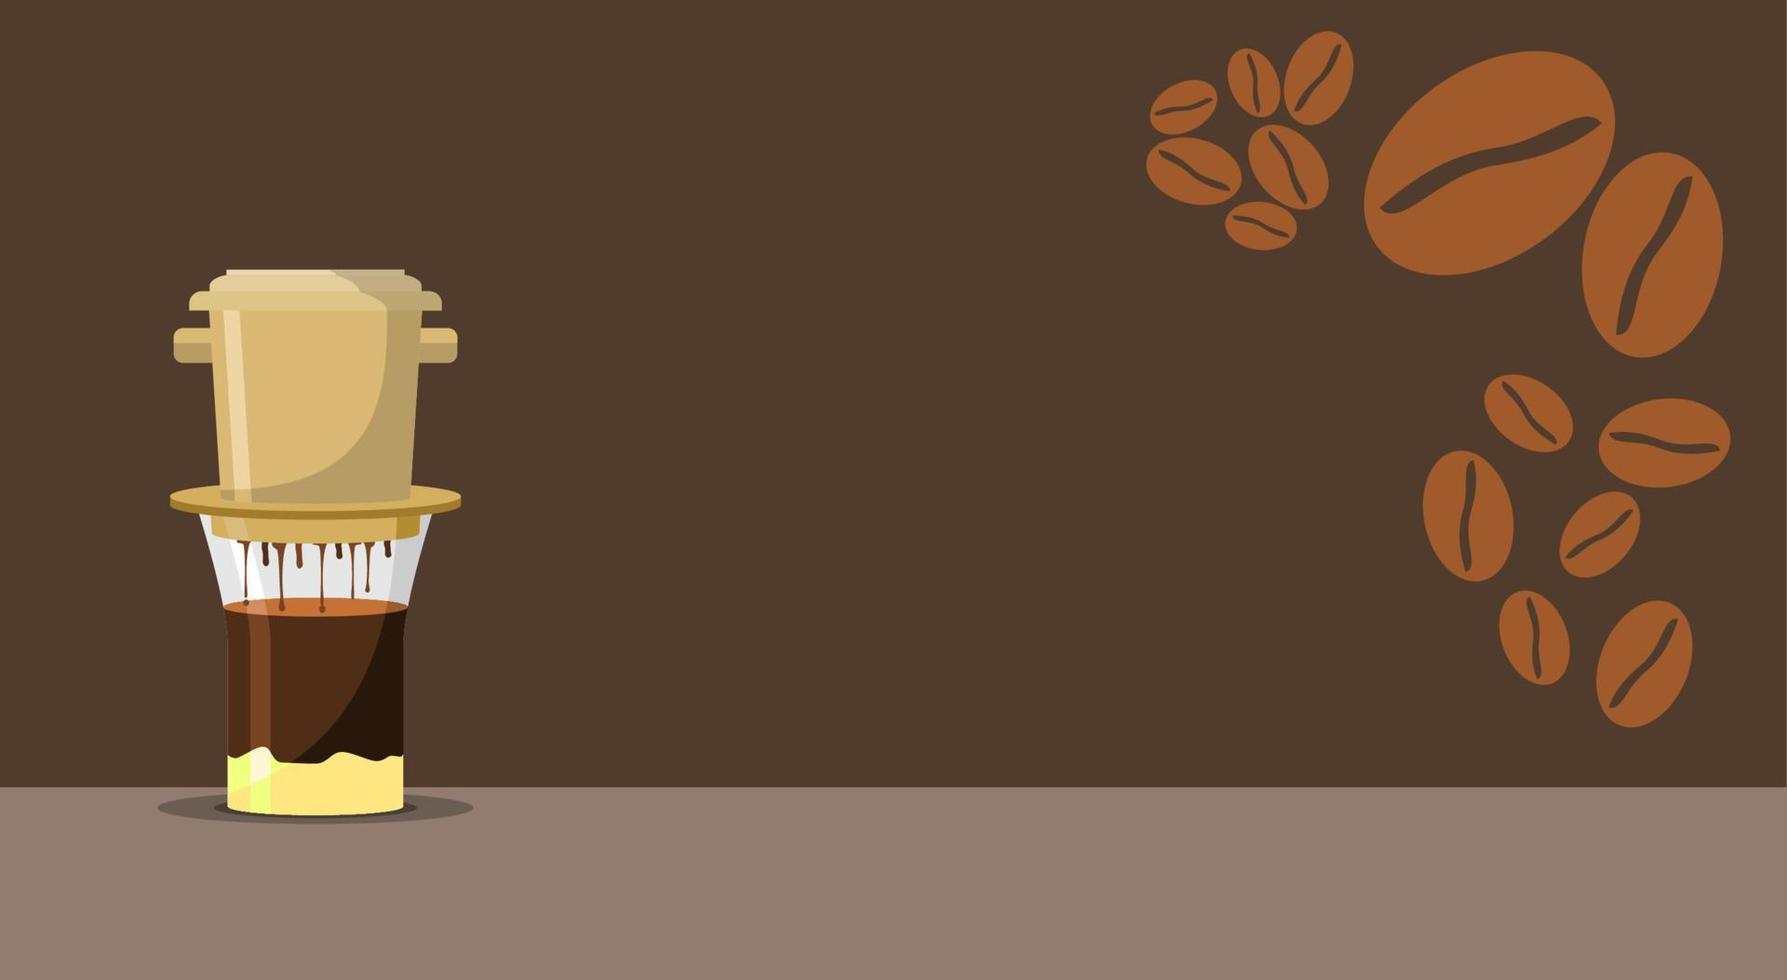 Bạn là tín đồ của cà phê Việt Nam? Vậy hãy xem qua bức tranh vẽ minh họa về cách pha cà phê phin để hiểu rõ hơn về truyền thống văn hóa uống cà phê của Việt Nam. Hãy click ngay để thưởng thức!